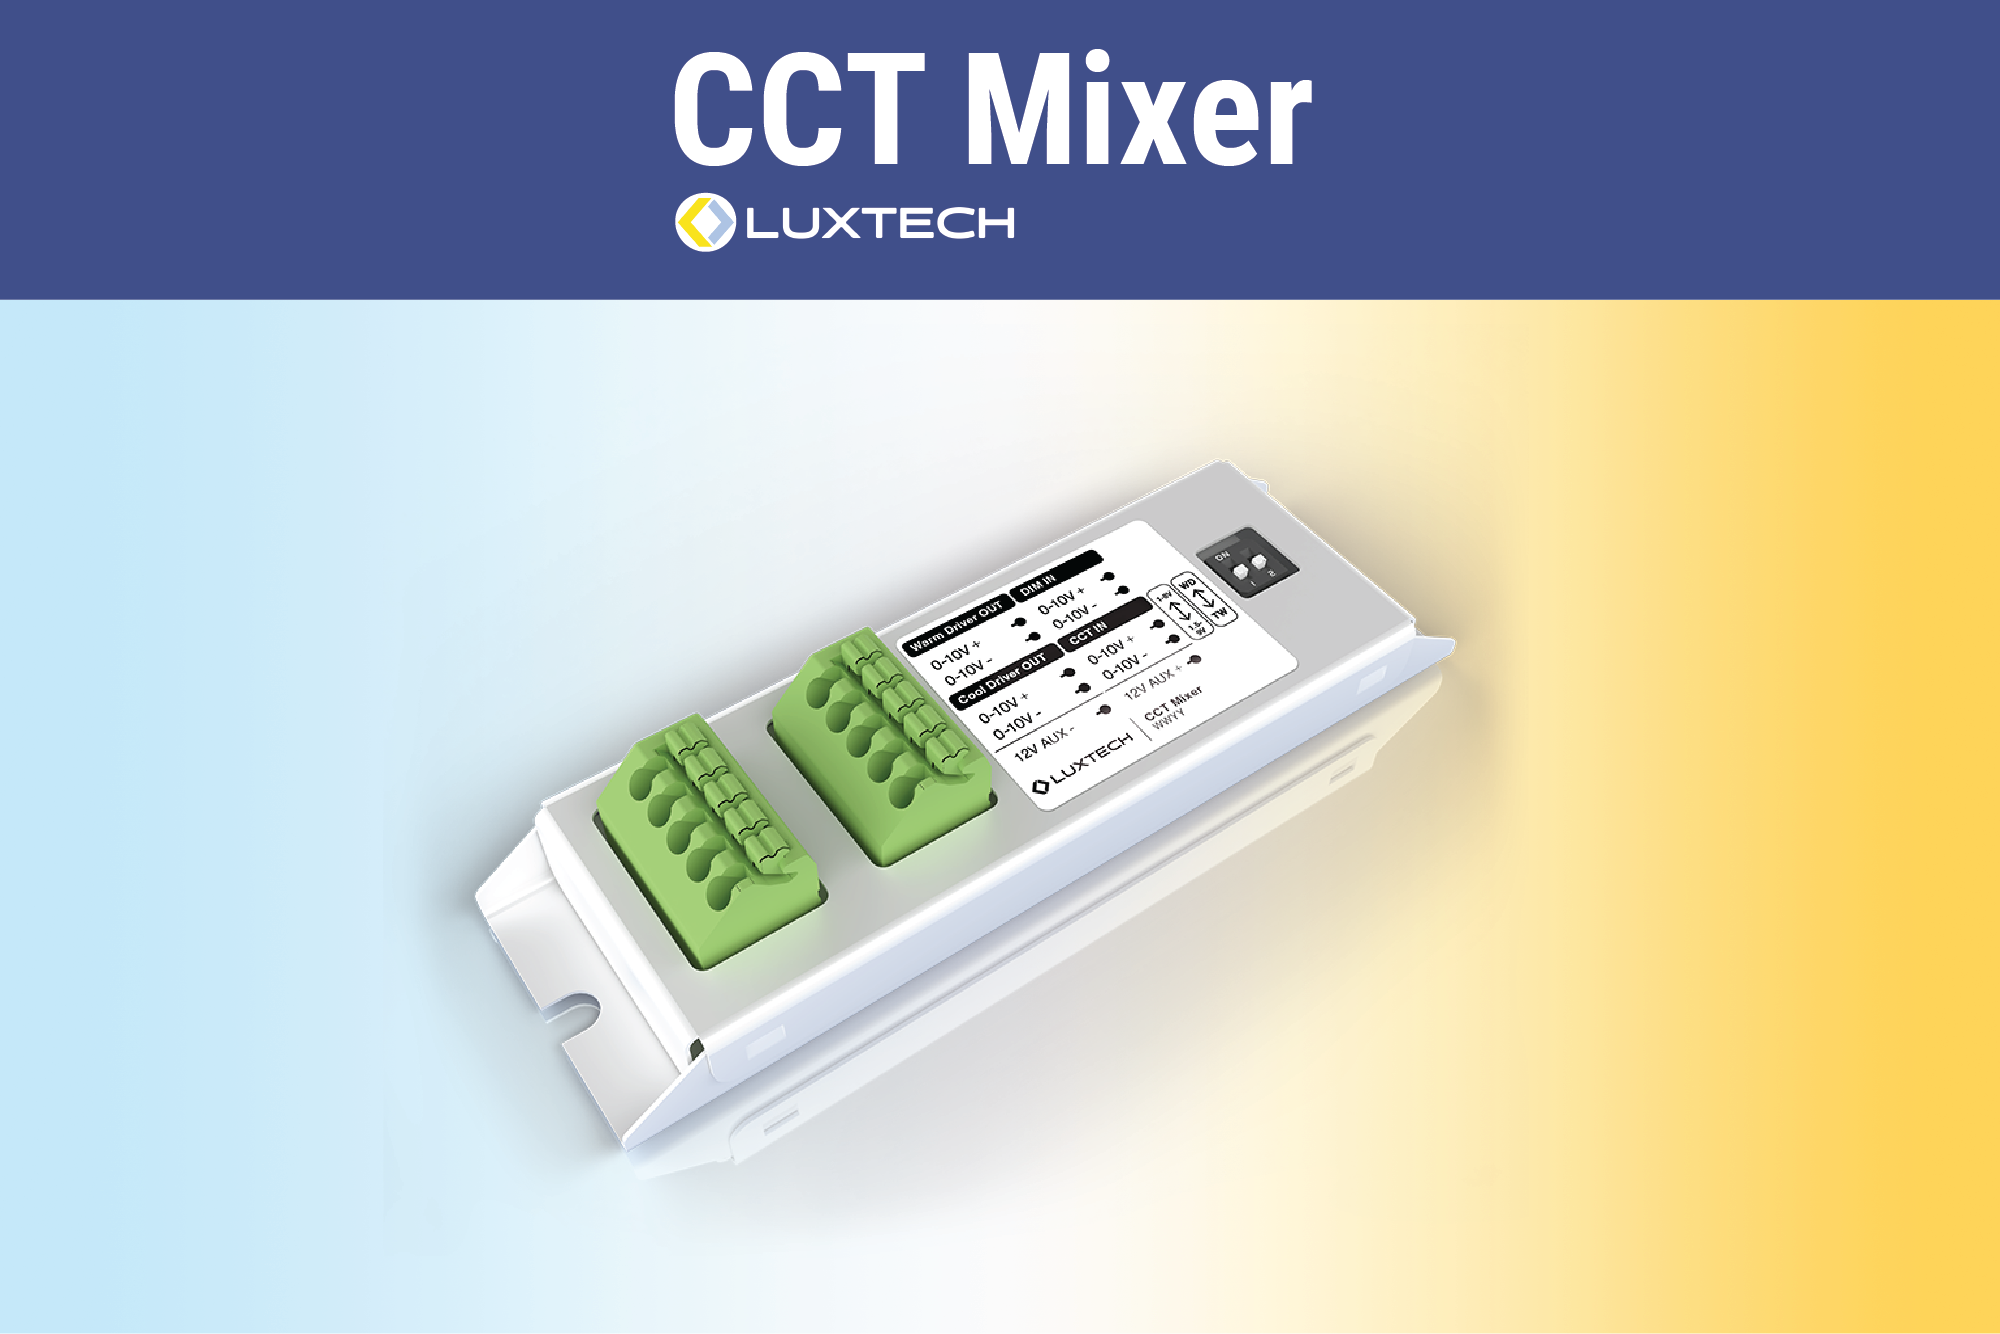 LUXTECH_CCT-Mixer_Inside.Lighting_Press-Release_960x640.png